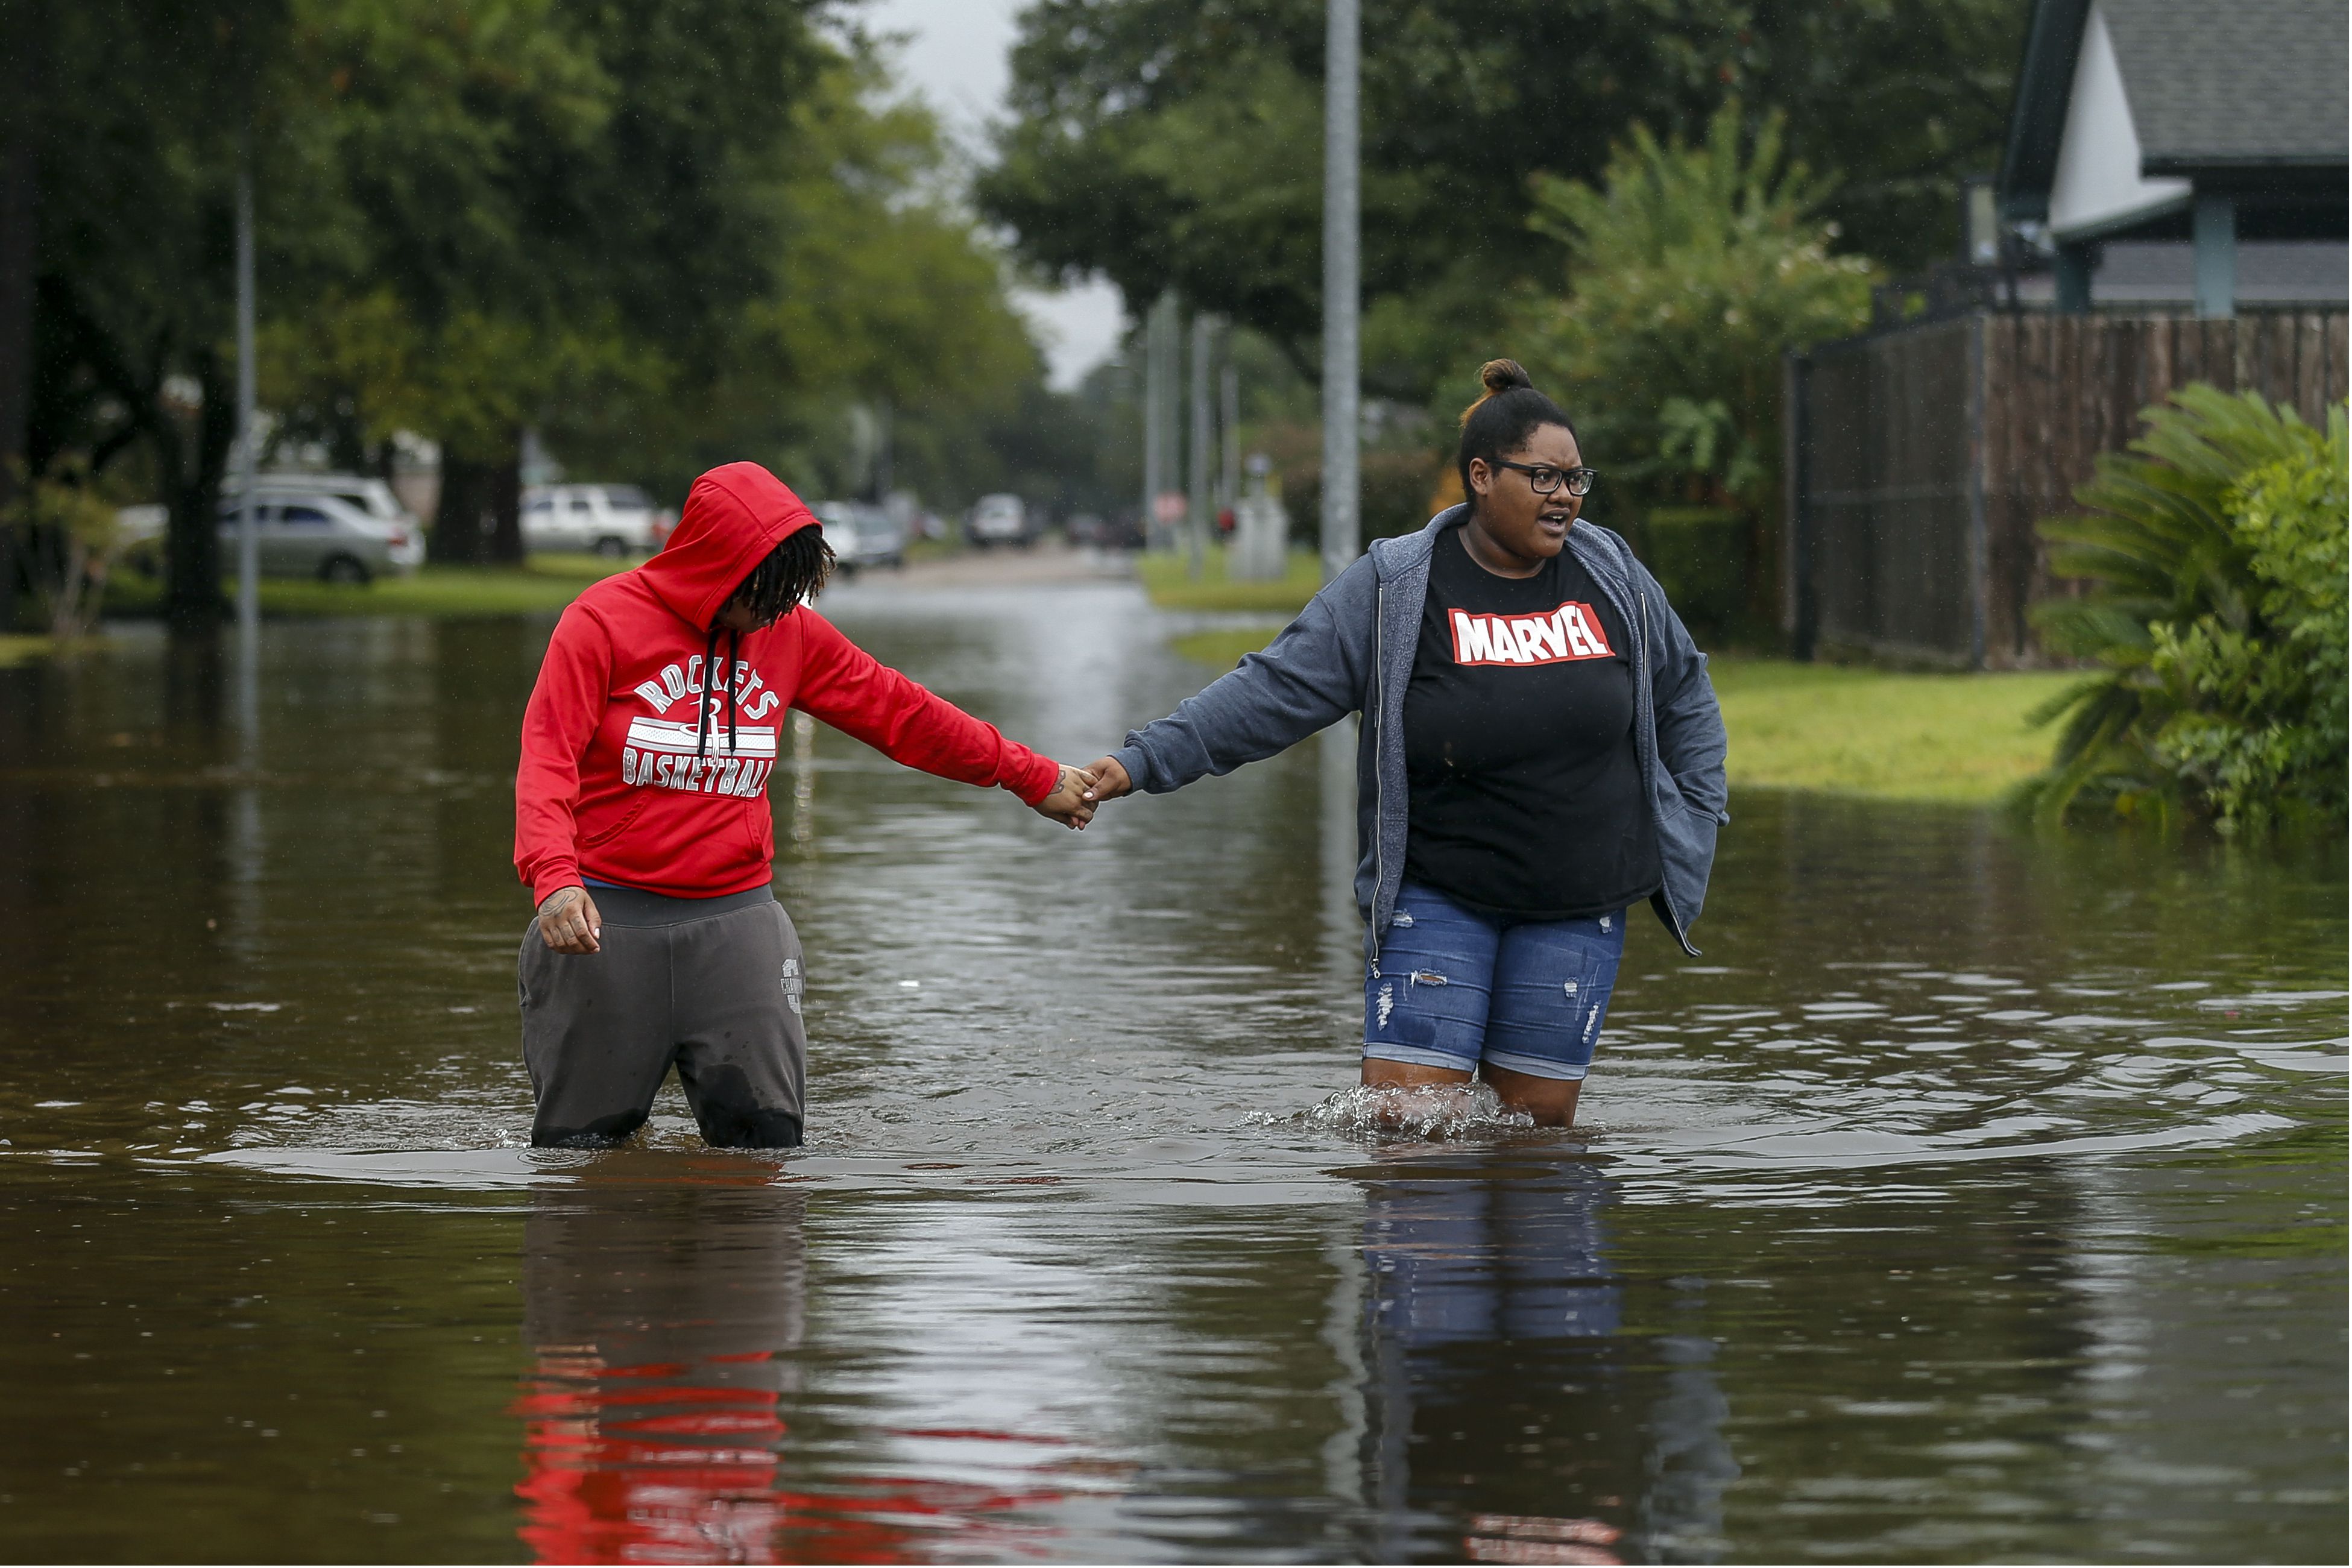 autoridades ordenan evacuación obligatoria de área metropolitana de houston ante una “ola de inundaciones”